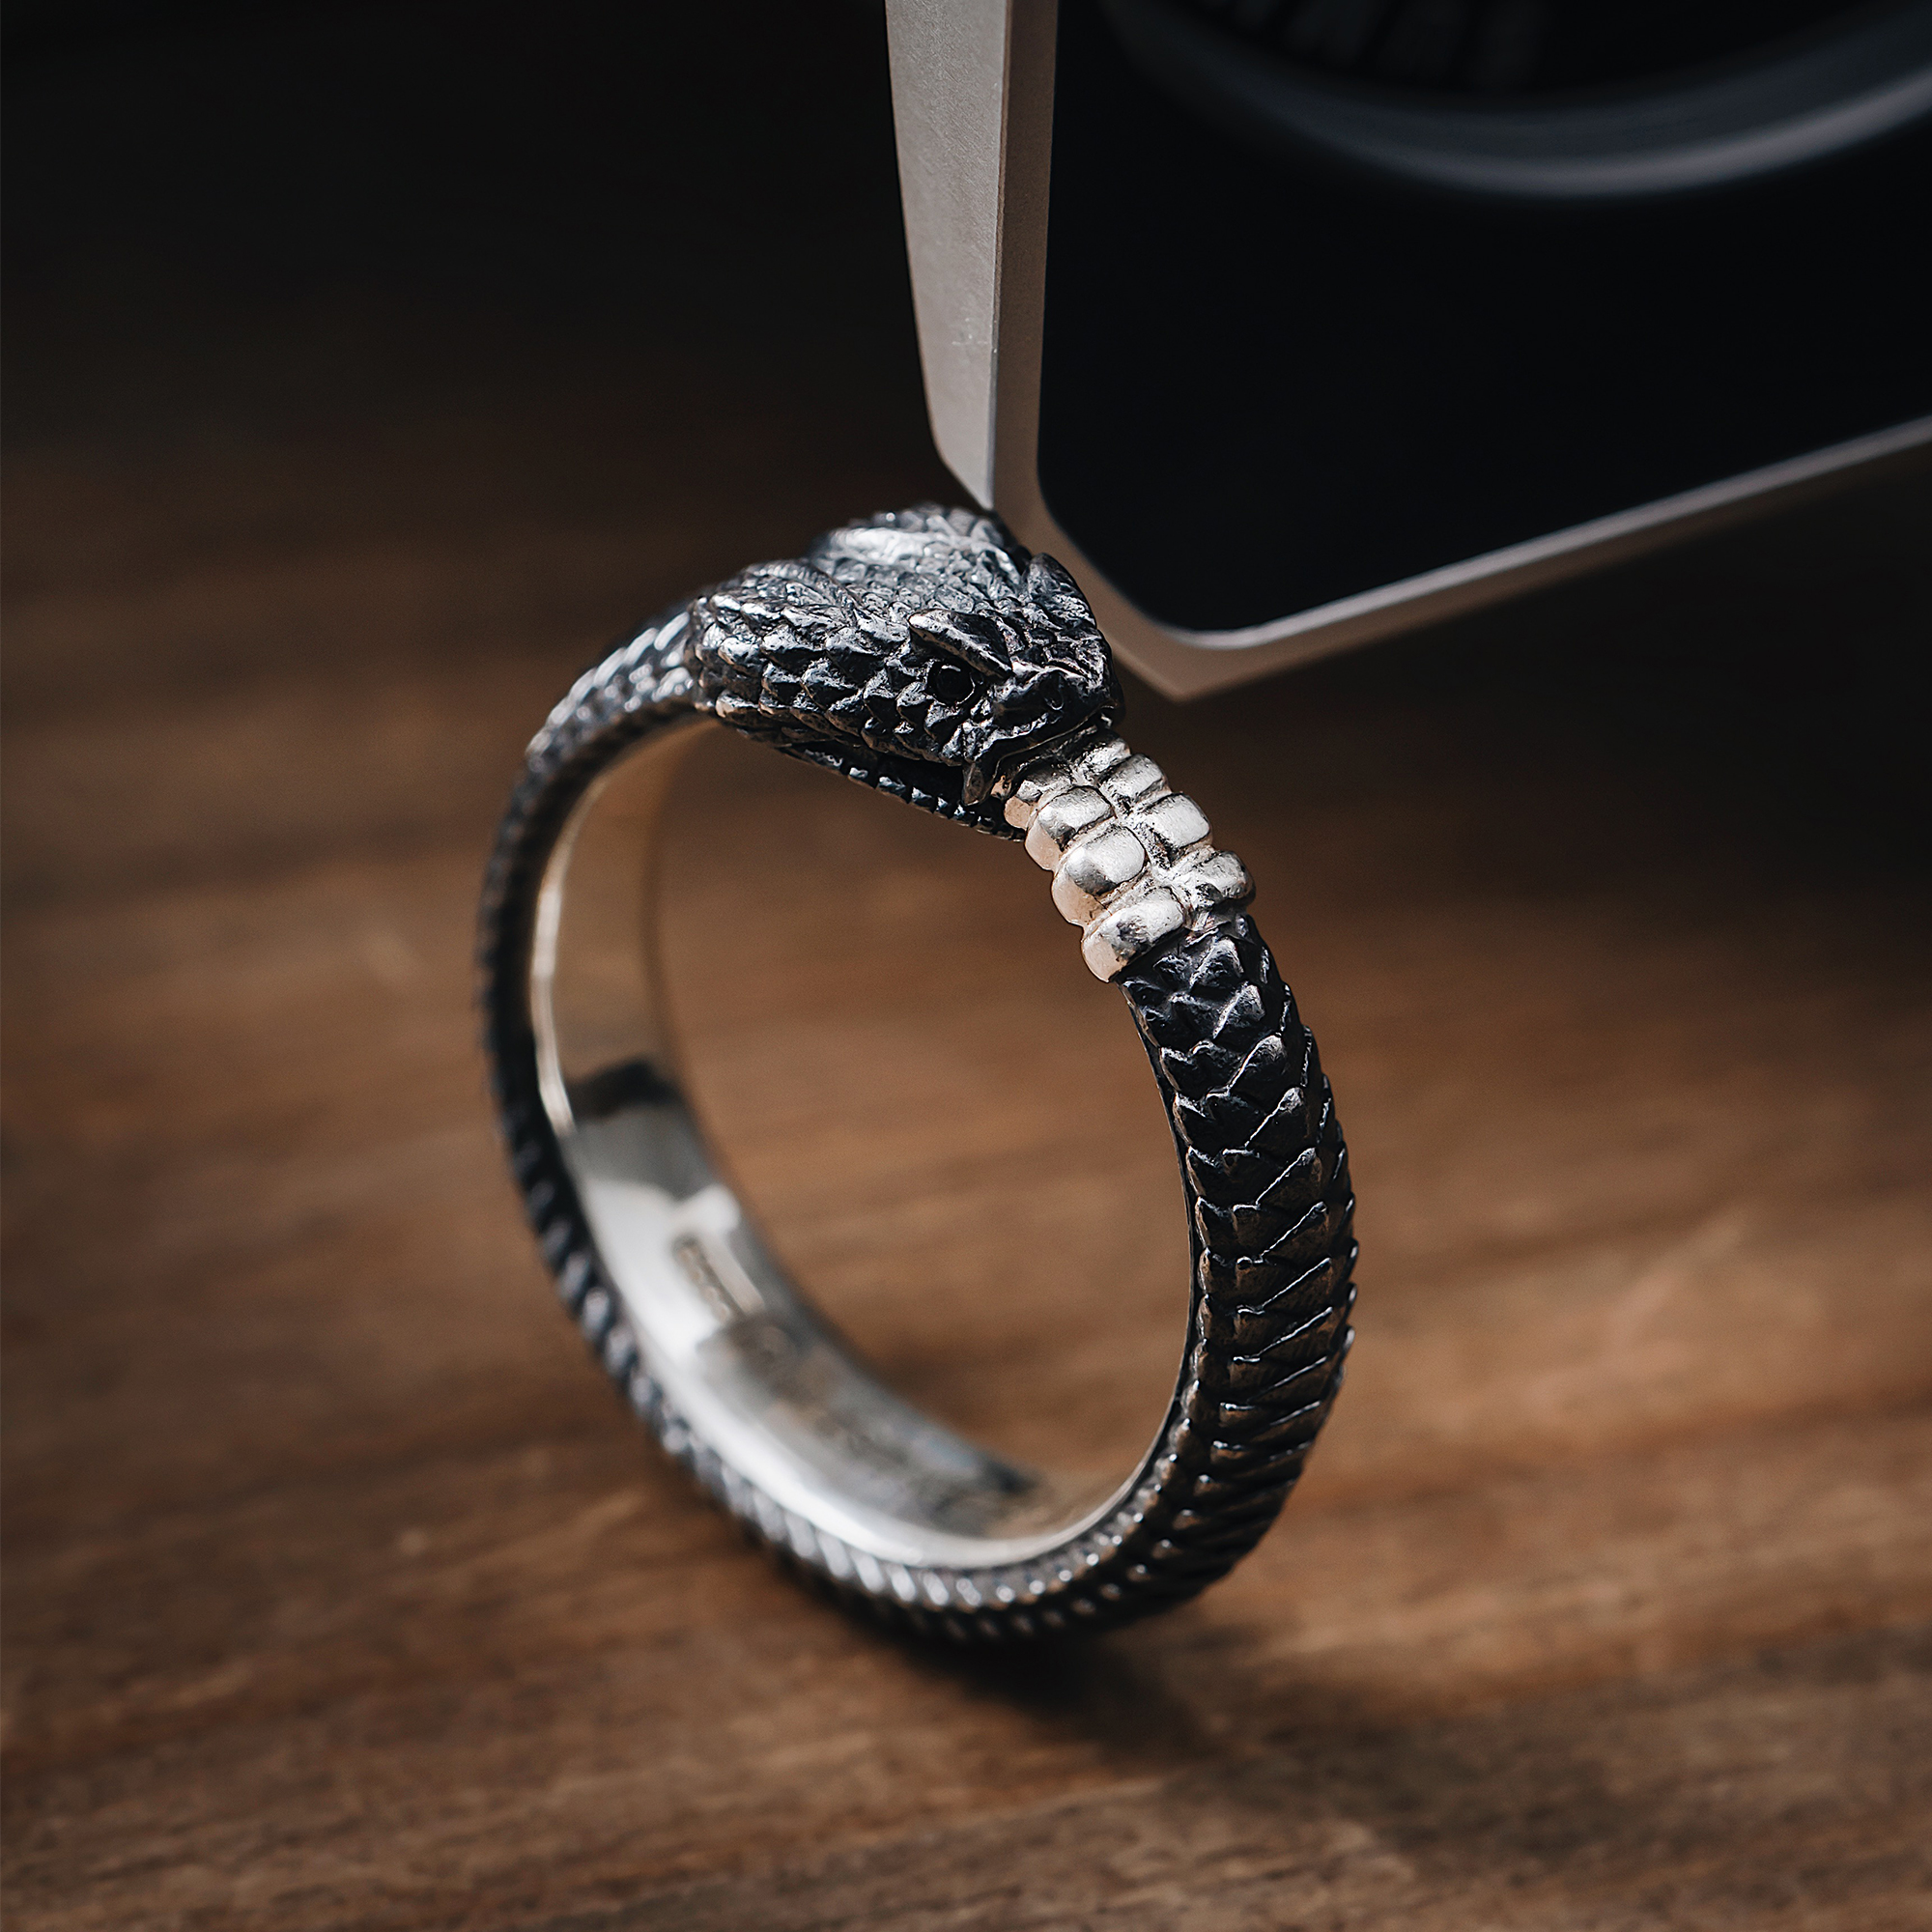 I designed a silver ouroboros ring